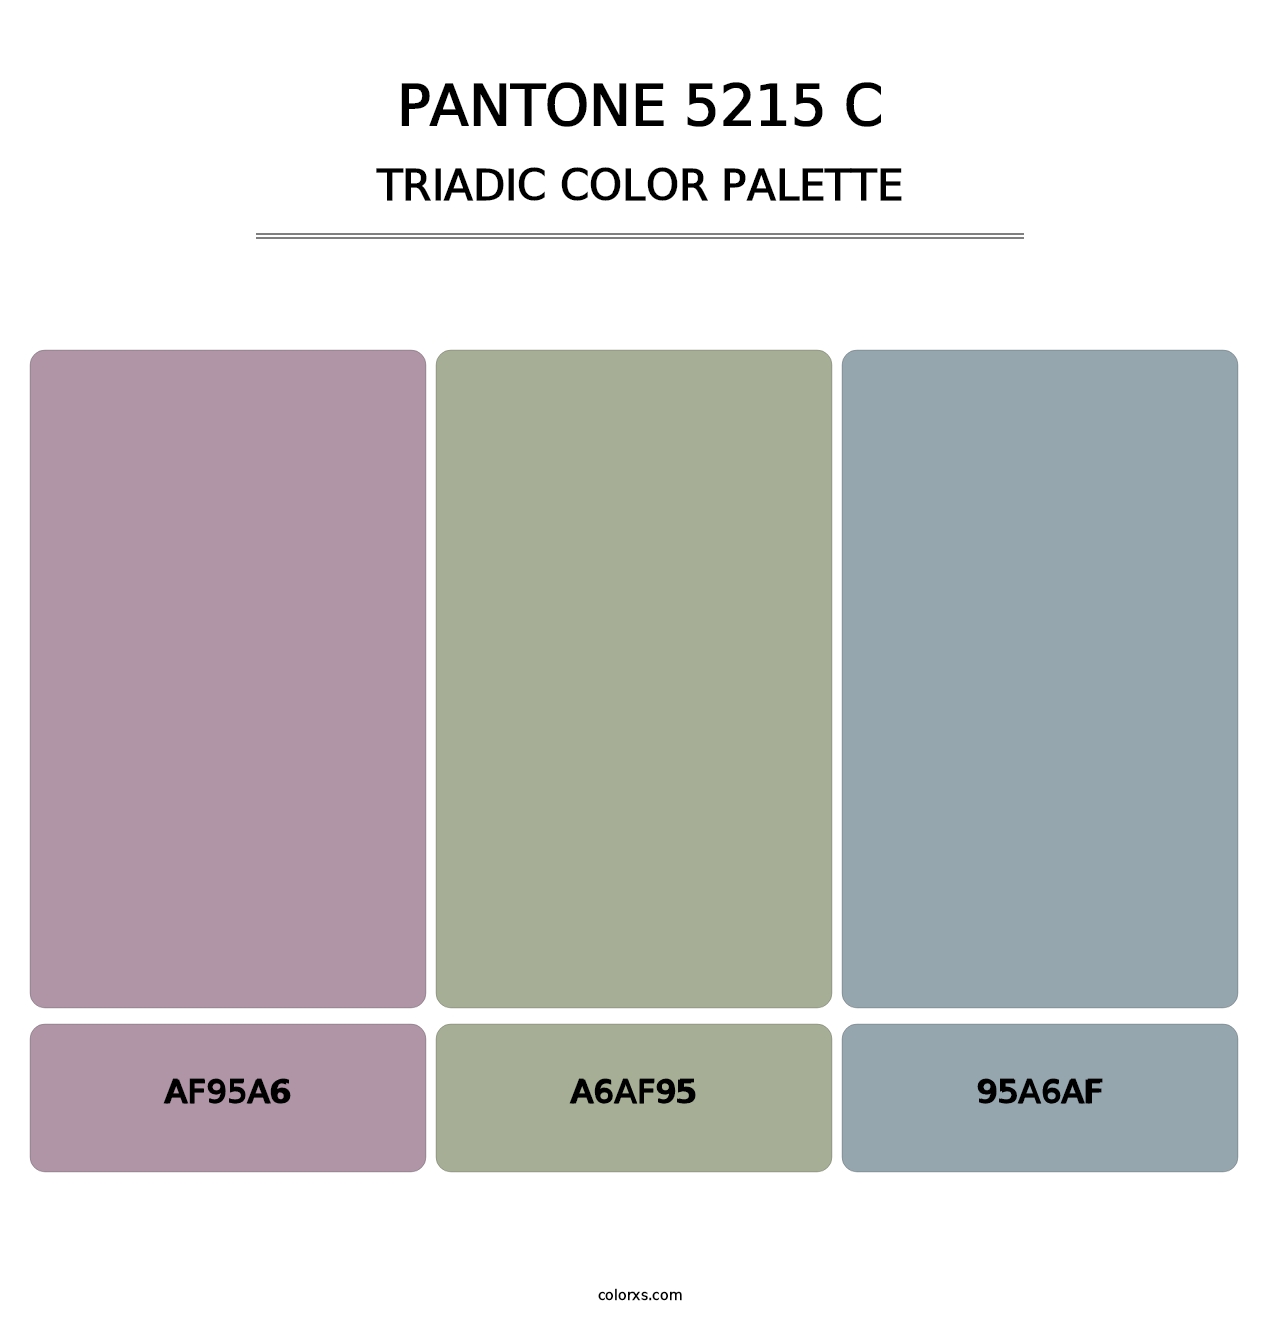 PANTONE 5215 C - Triadic Color Palette